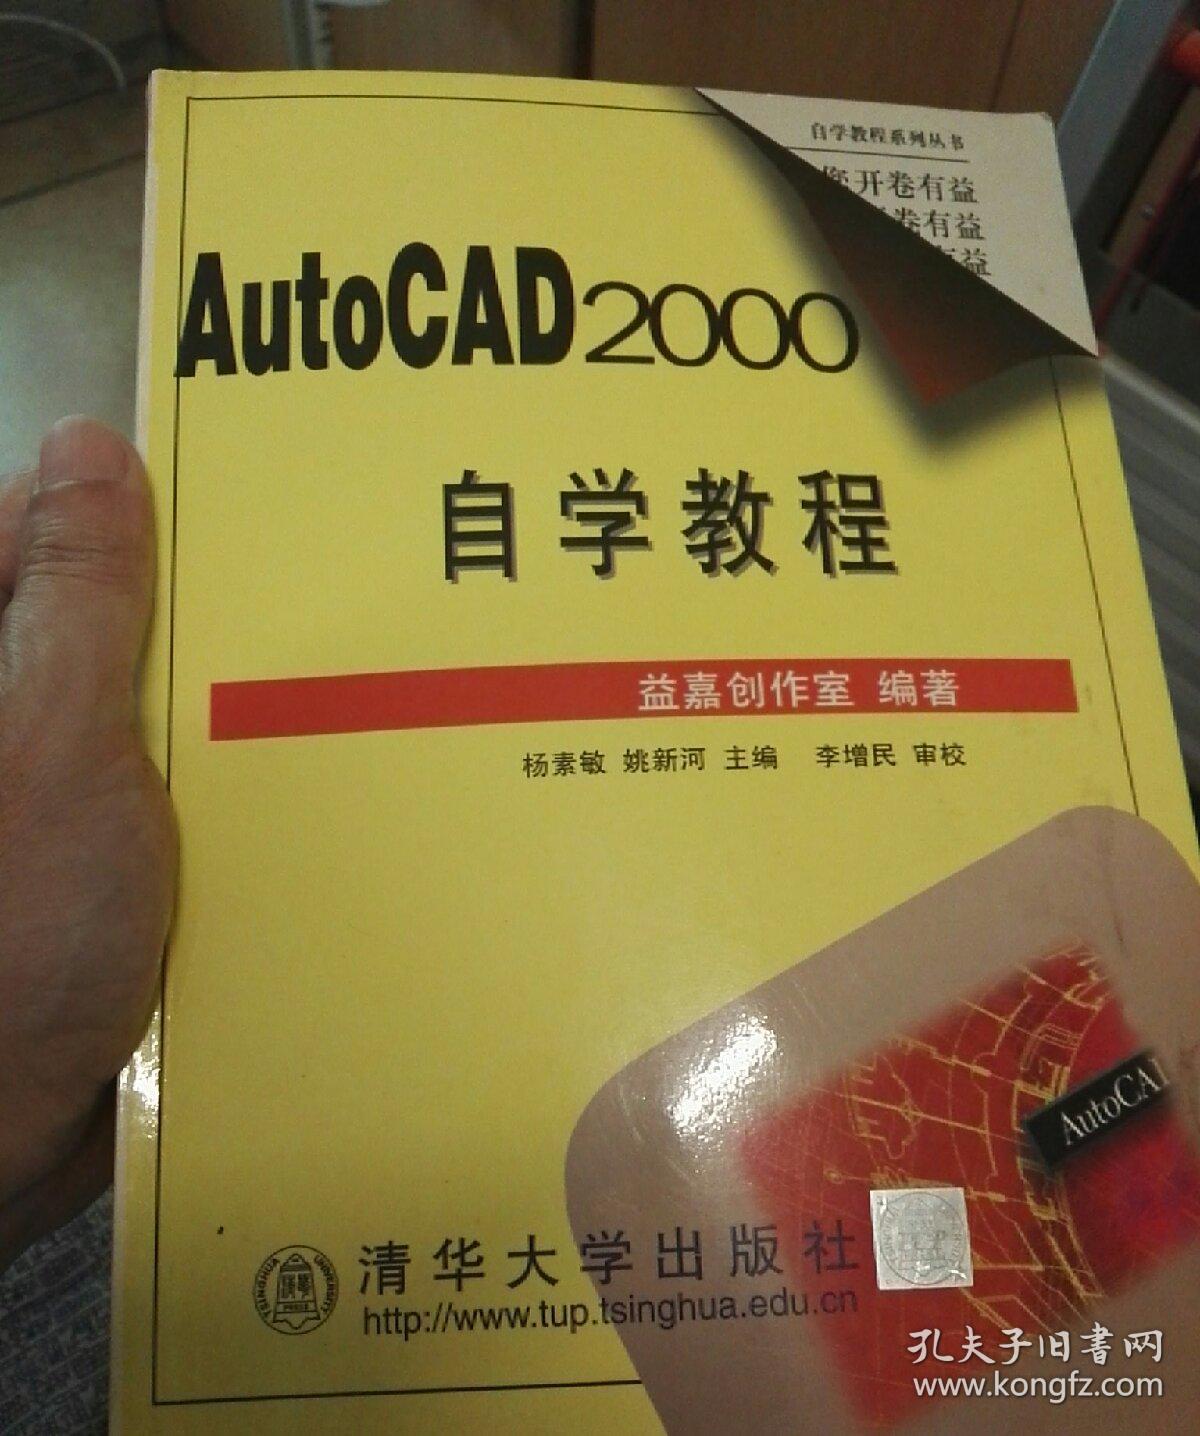 AutoCad2000 自学教程